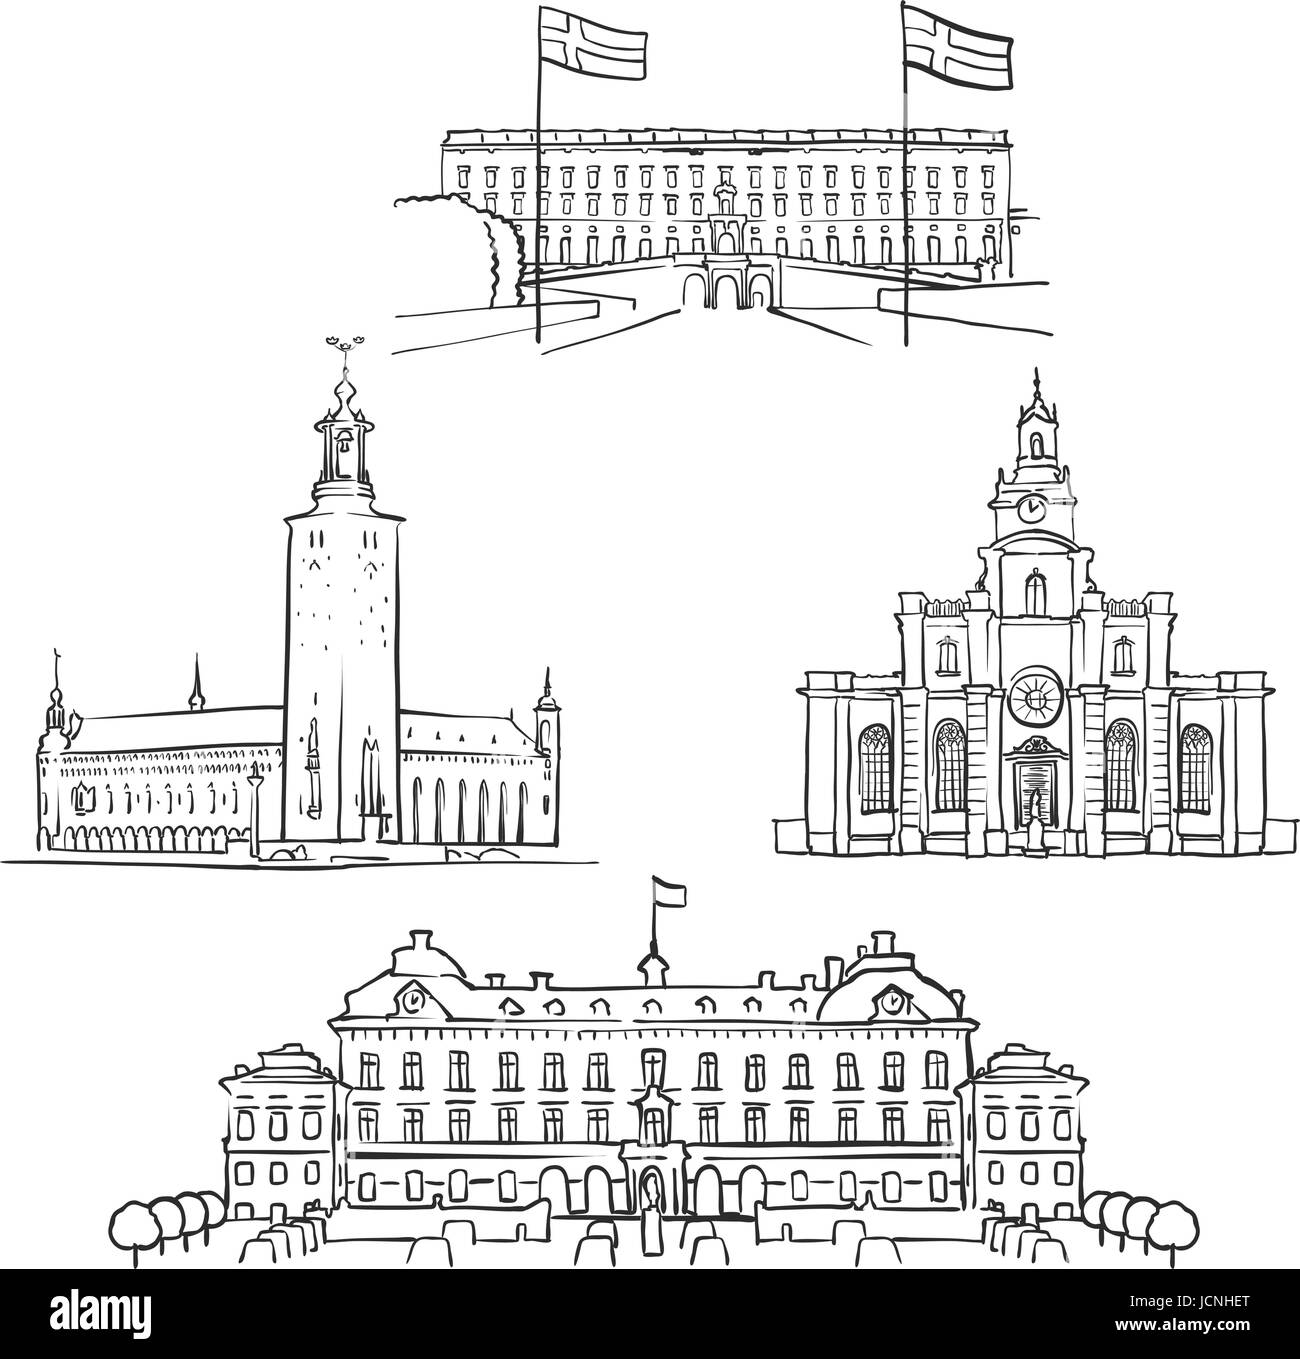 Stockholm-berühmte Bauwerke, Monochrome skizzierten Reisen Sehenswürdigkeiten, skalierbare Vektor-Illustration Stock Vektor